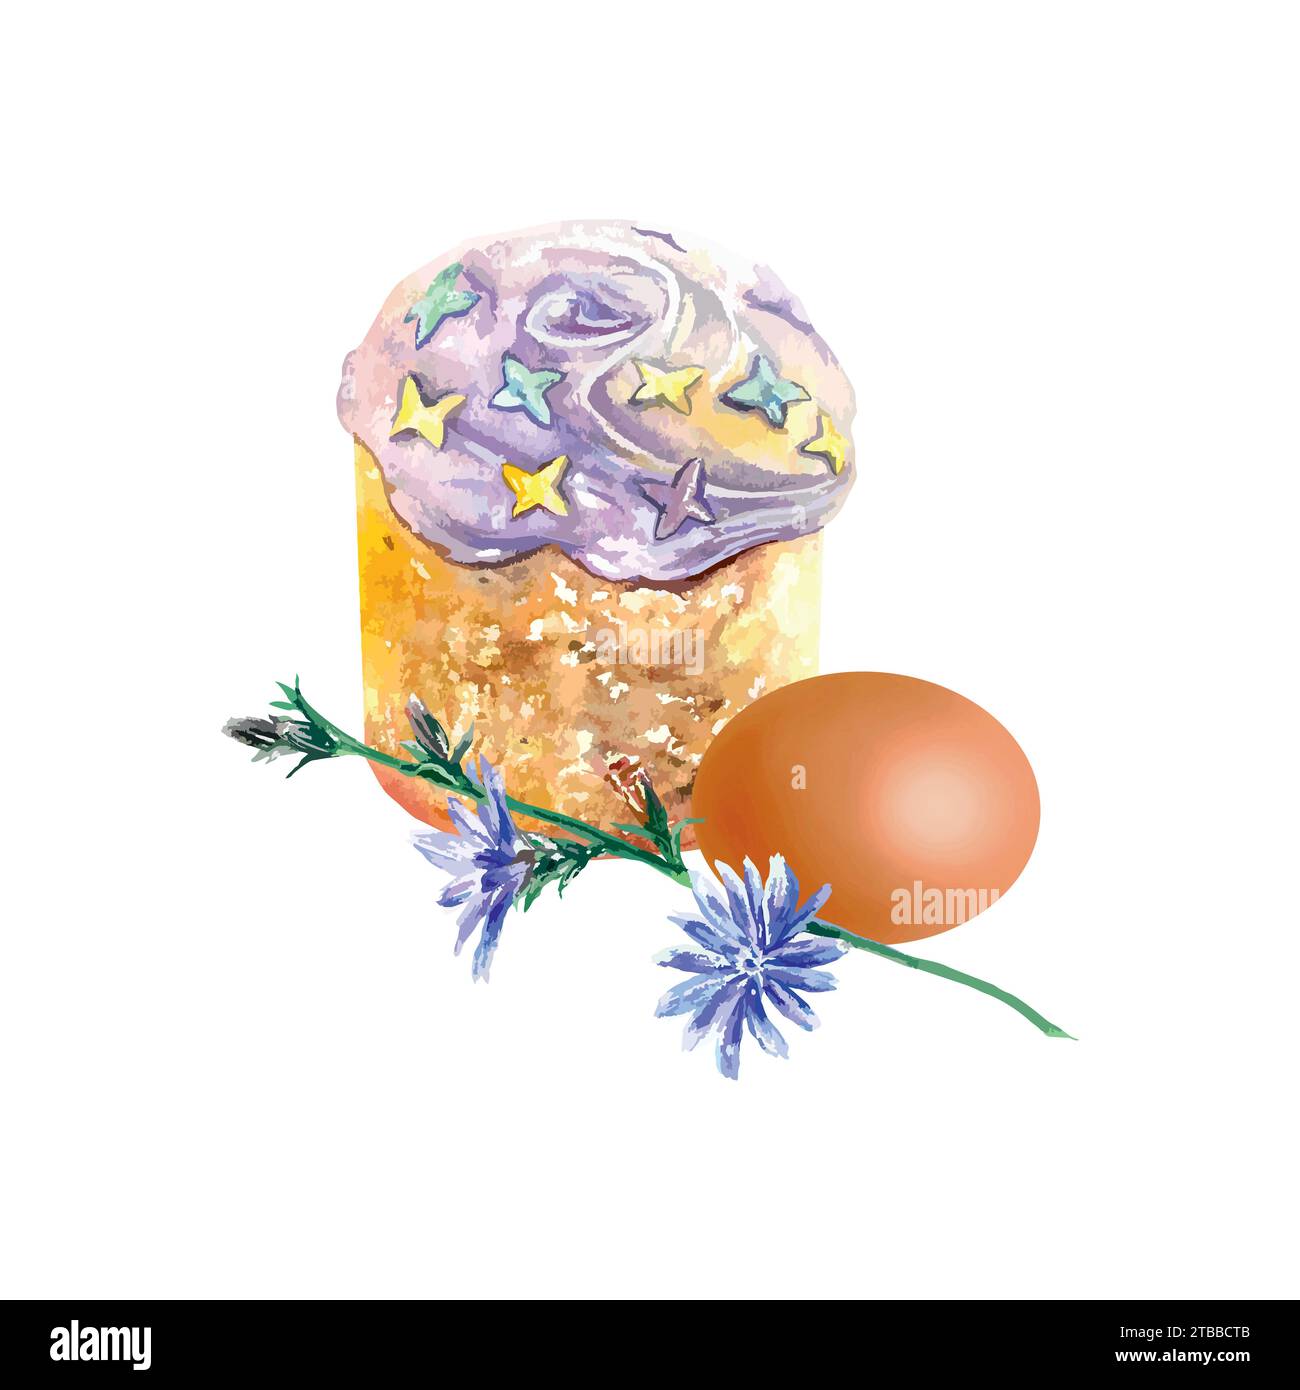 Torta pasquale, uova e cornamusa. Illustrazione vettoriale in stile acquerello. Elemento di design per biglietti di auguri, inviti, banner festivi, copertine. Illustrazione Vettoriale